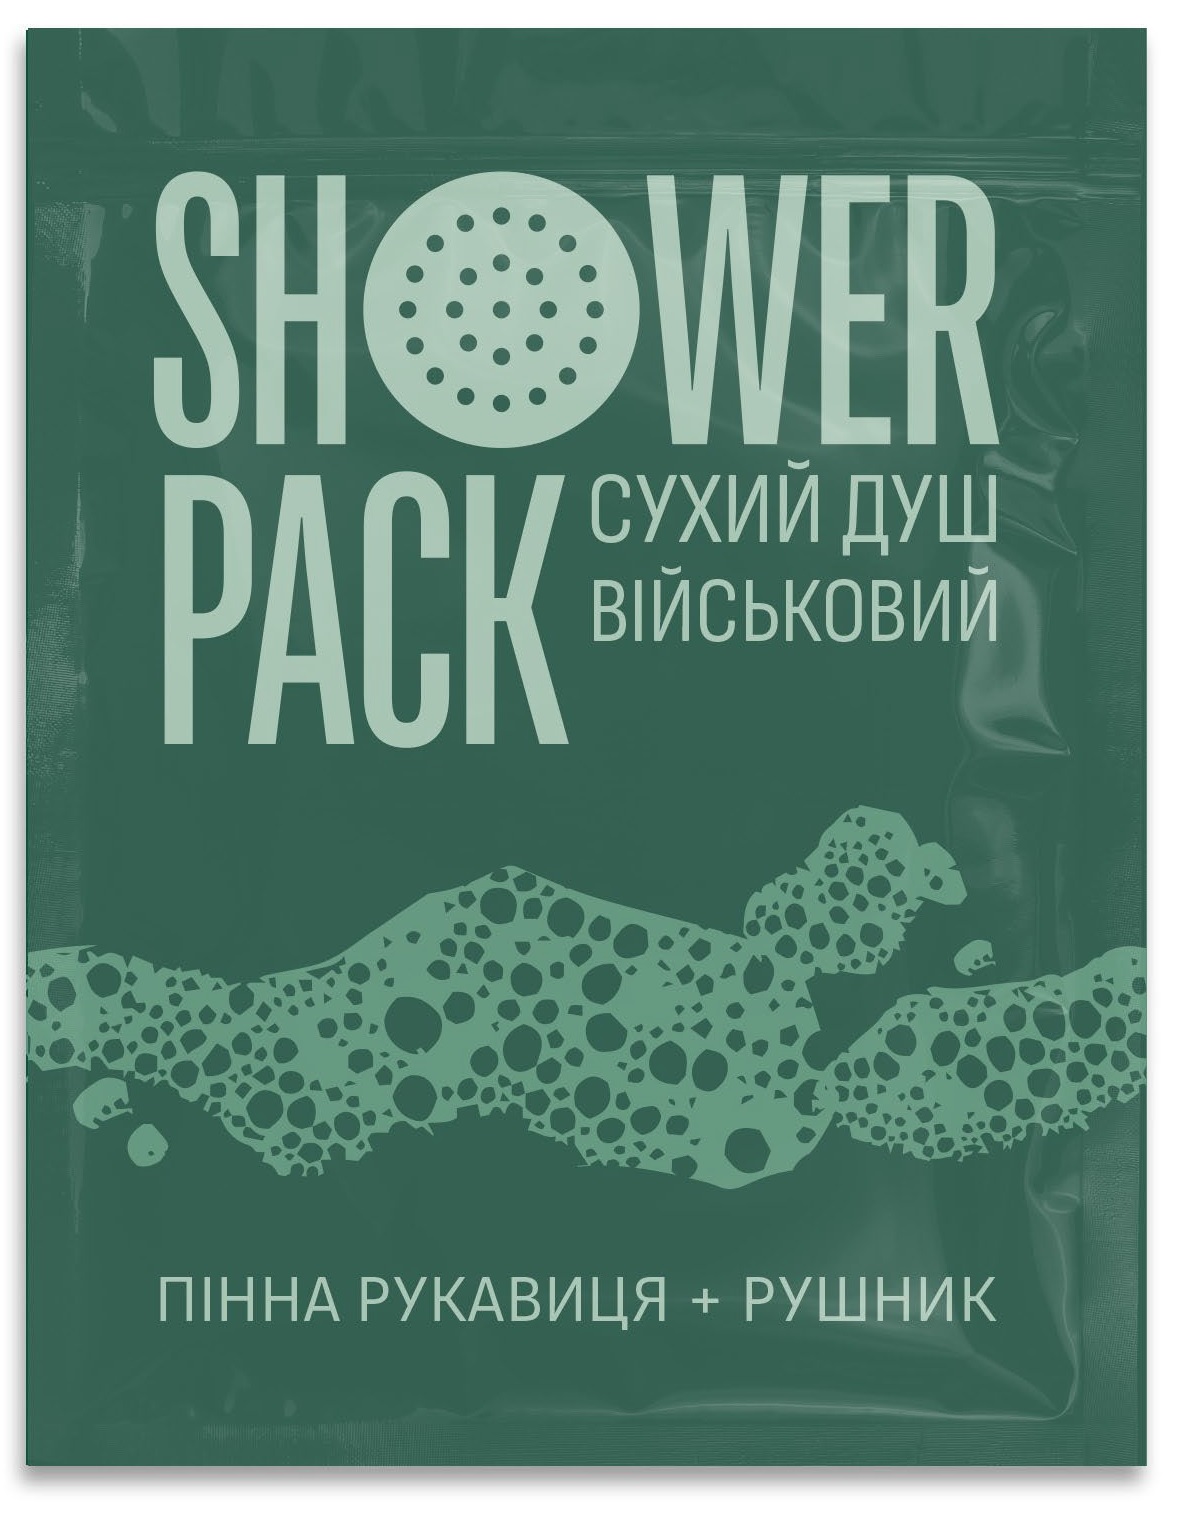 Сухий душ військовий Shower Pack